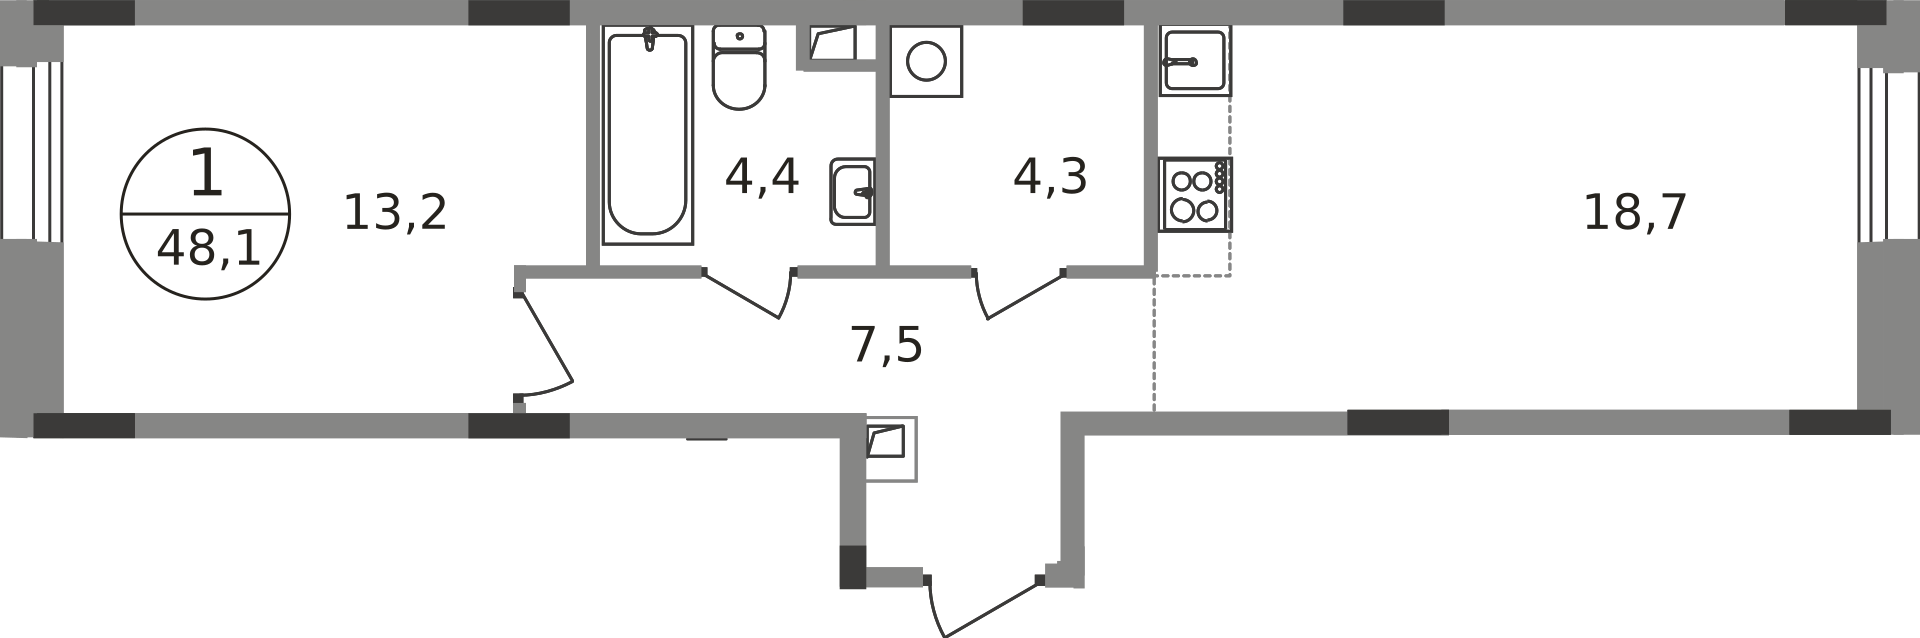 1 комн. квартира, 48.1 м², 1 этаж  (из 9)